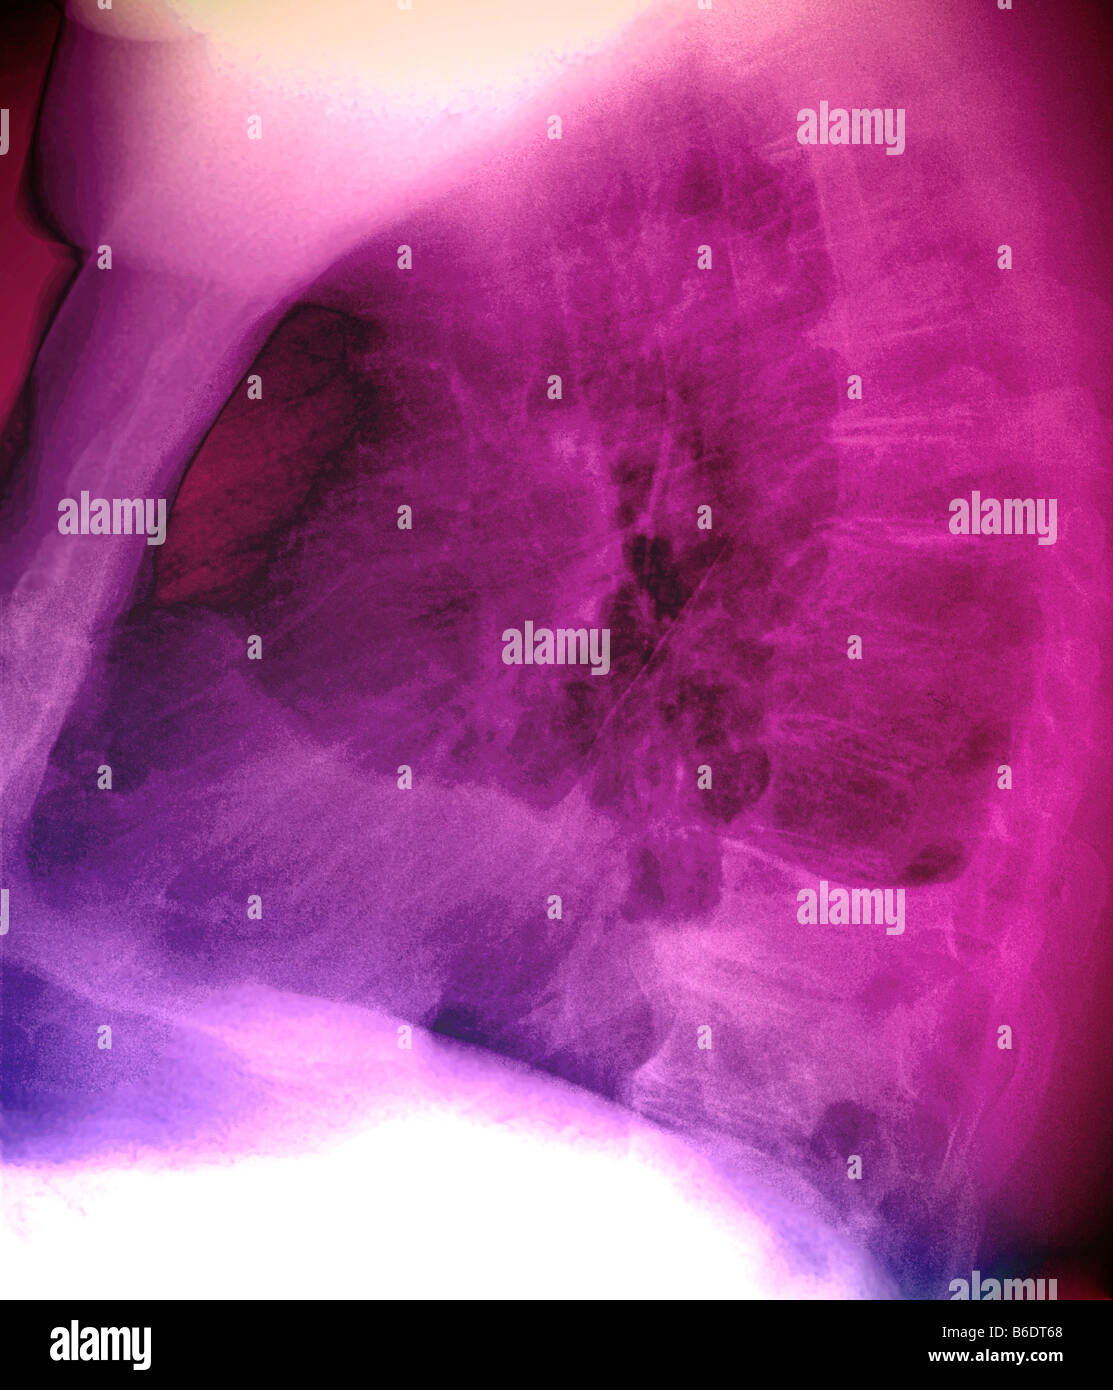 Pleuraerguss. Farbige Seite Röntgen der Lunge eines 60 Jahre alten Patienten mit einem Pleuraerguss der linken Lunge. Stockfoto